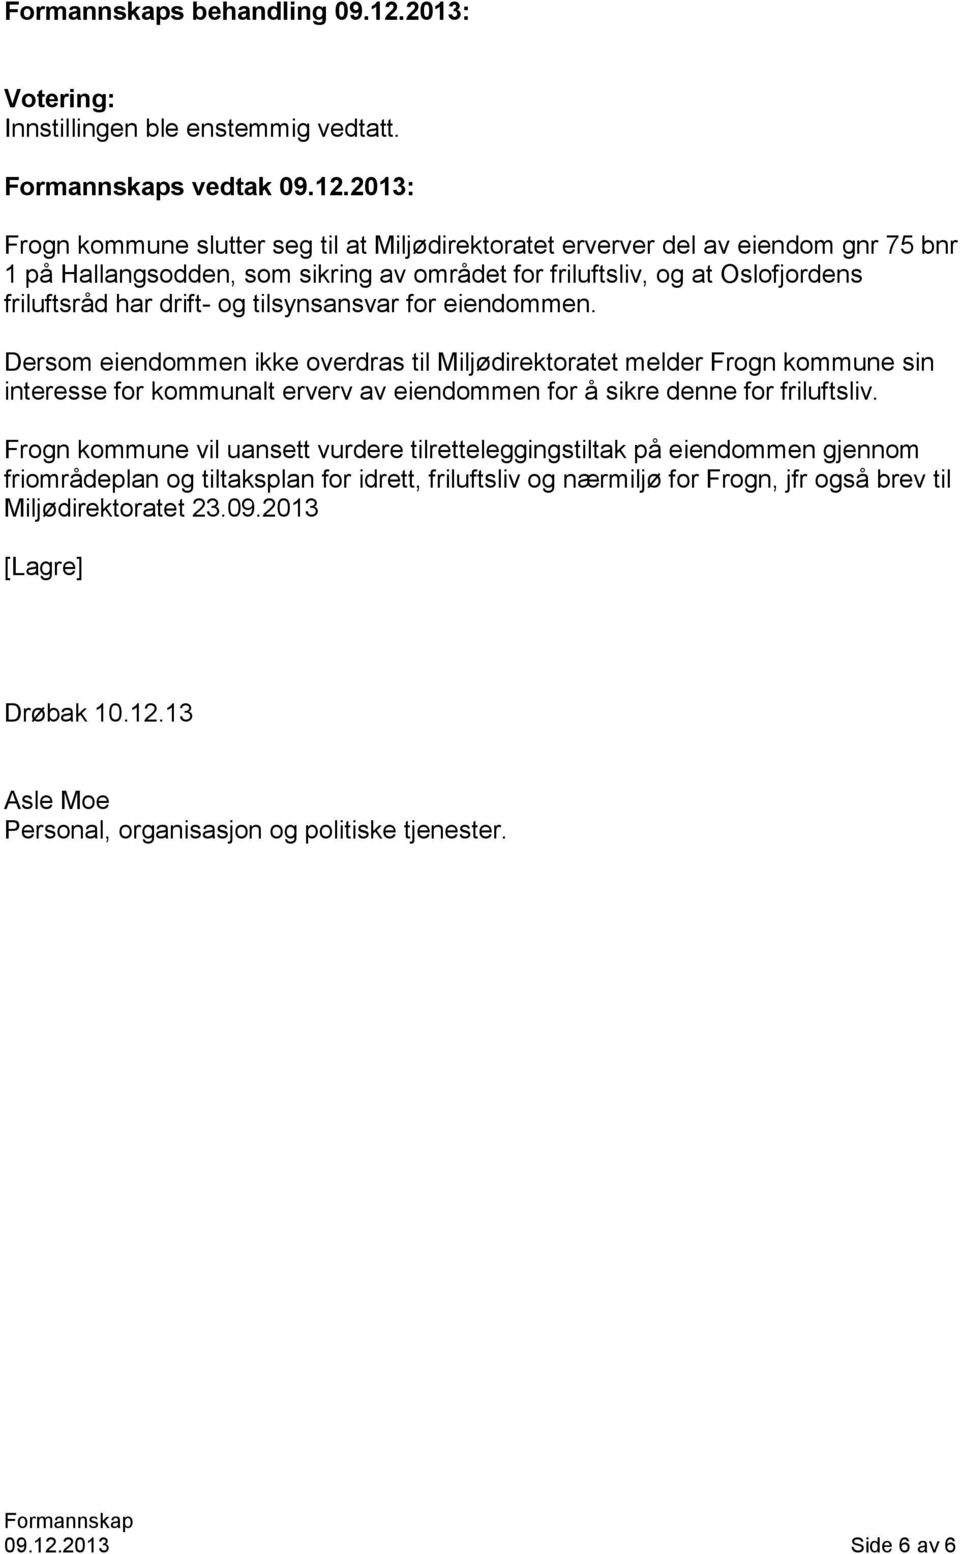 2013: Frogn kommune slutter seg til at Miljødirektoratet erverver del av eiendom gnr 75 bnr 1 på Hallangsodden, som sikring av området for friluftsliv, og at Oslofjordens friluftsråd har drift-